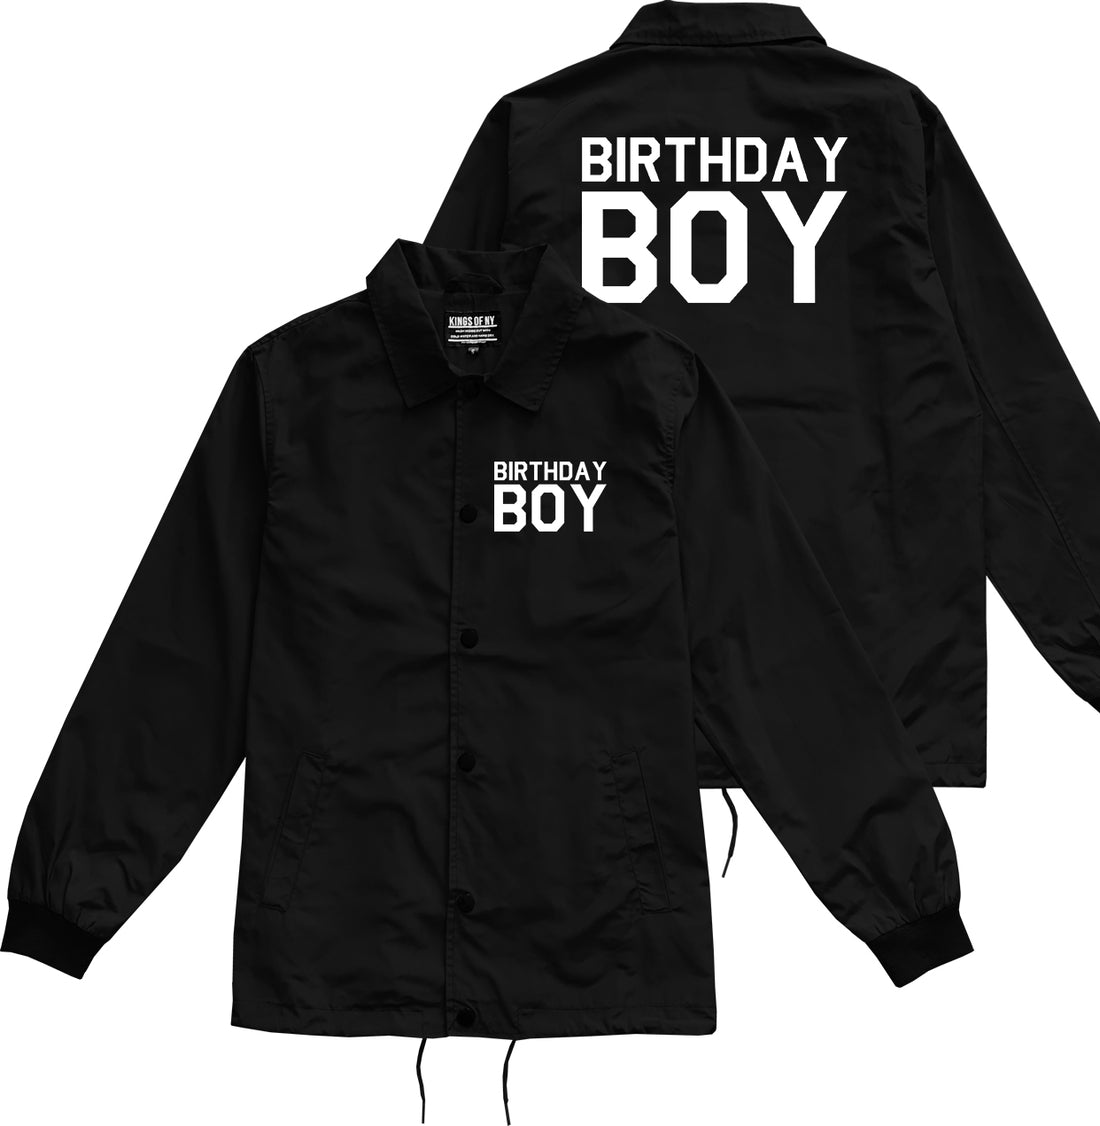 Birthday Boy Black Coaches Jacket by Kings Of NY